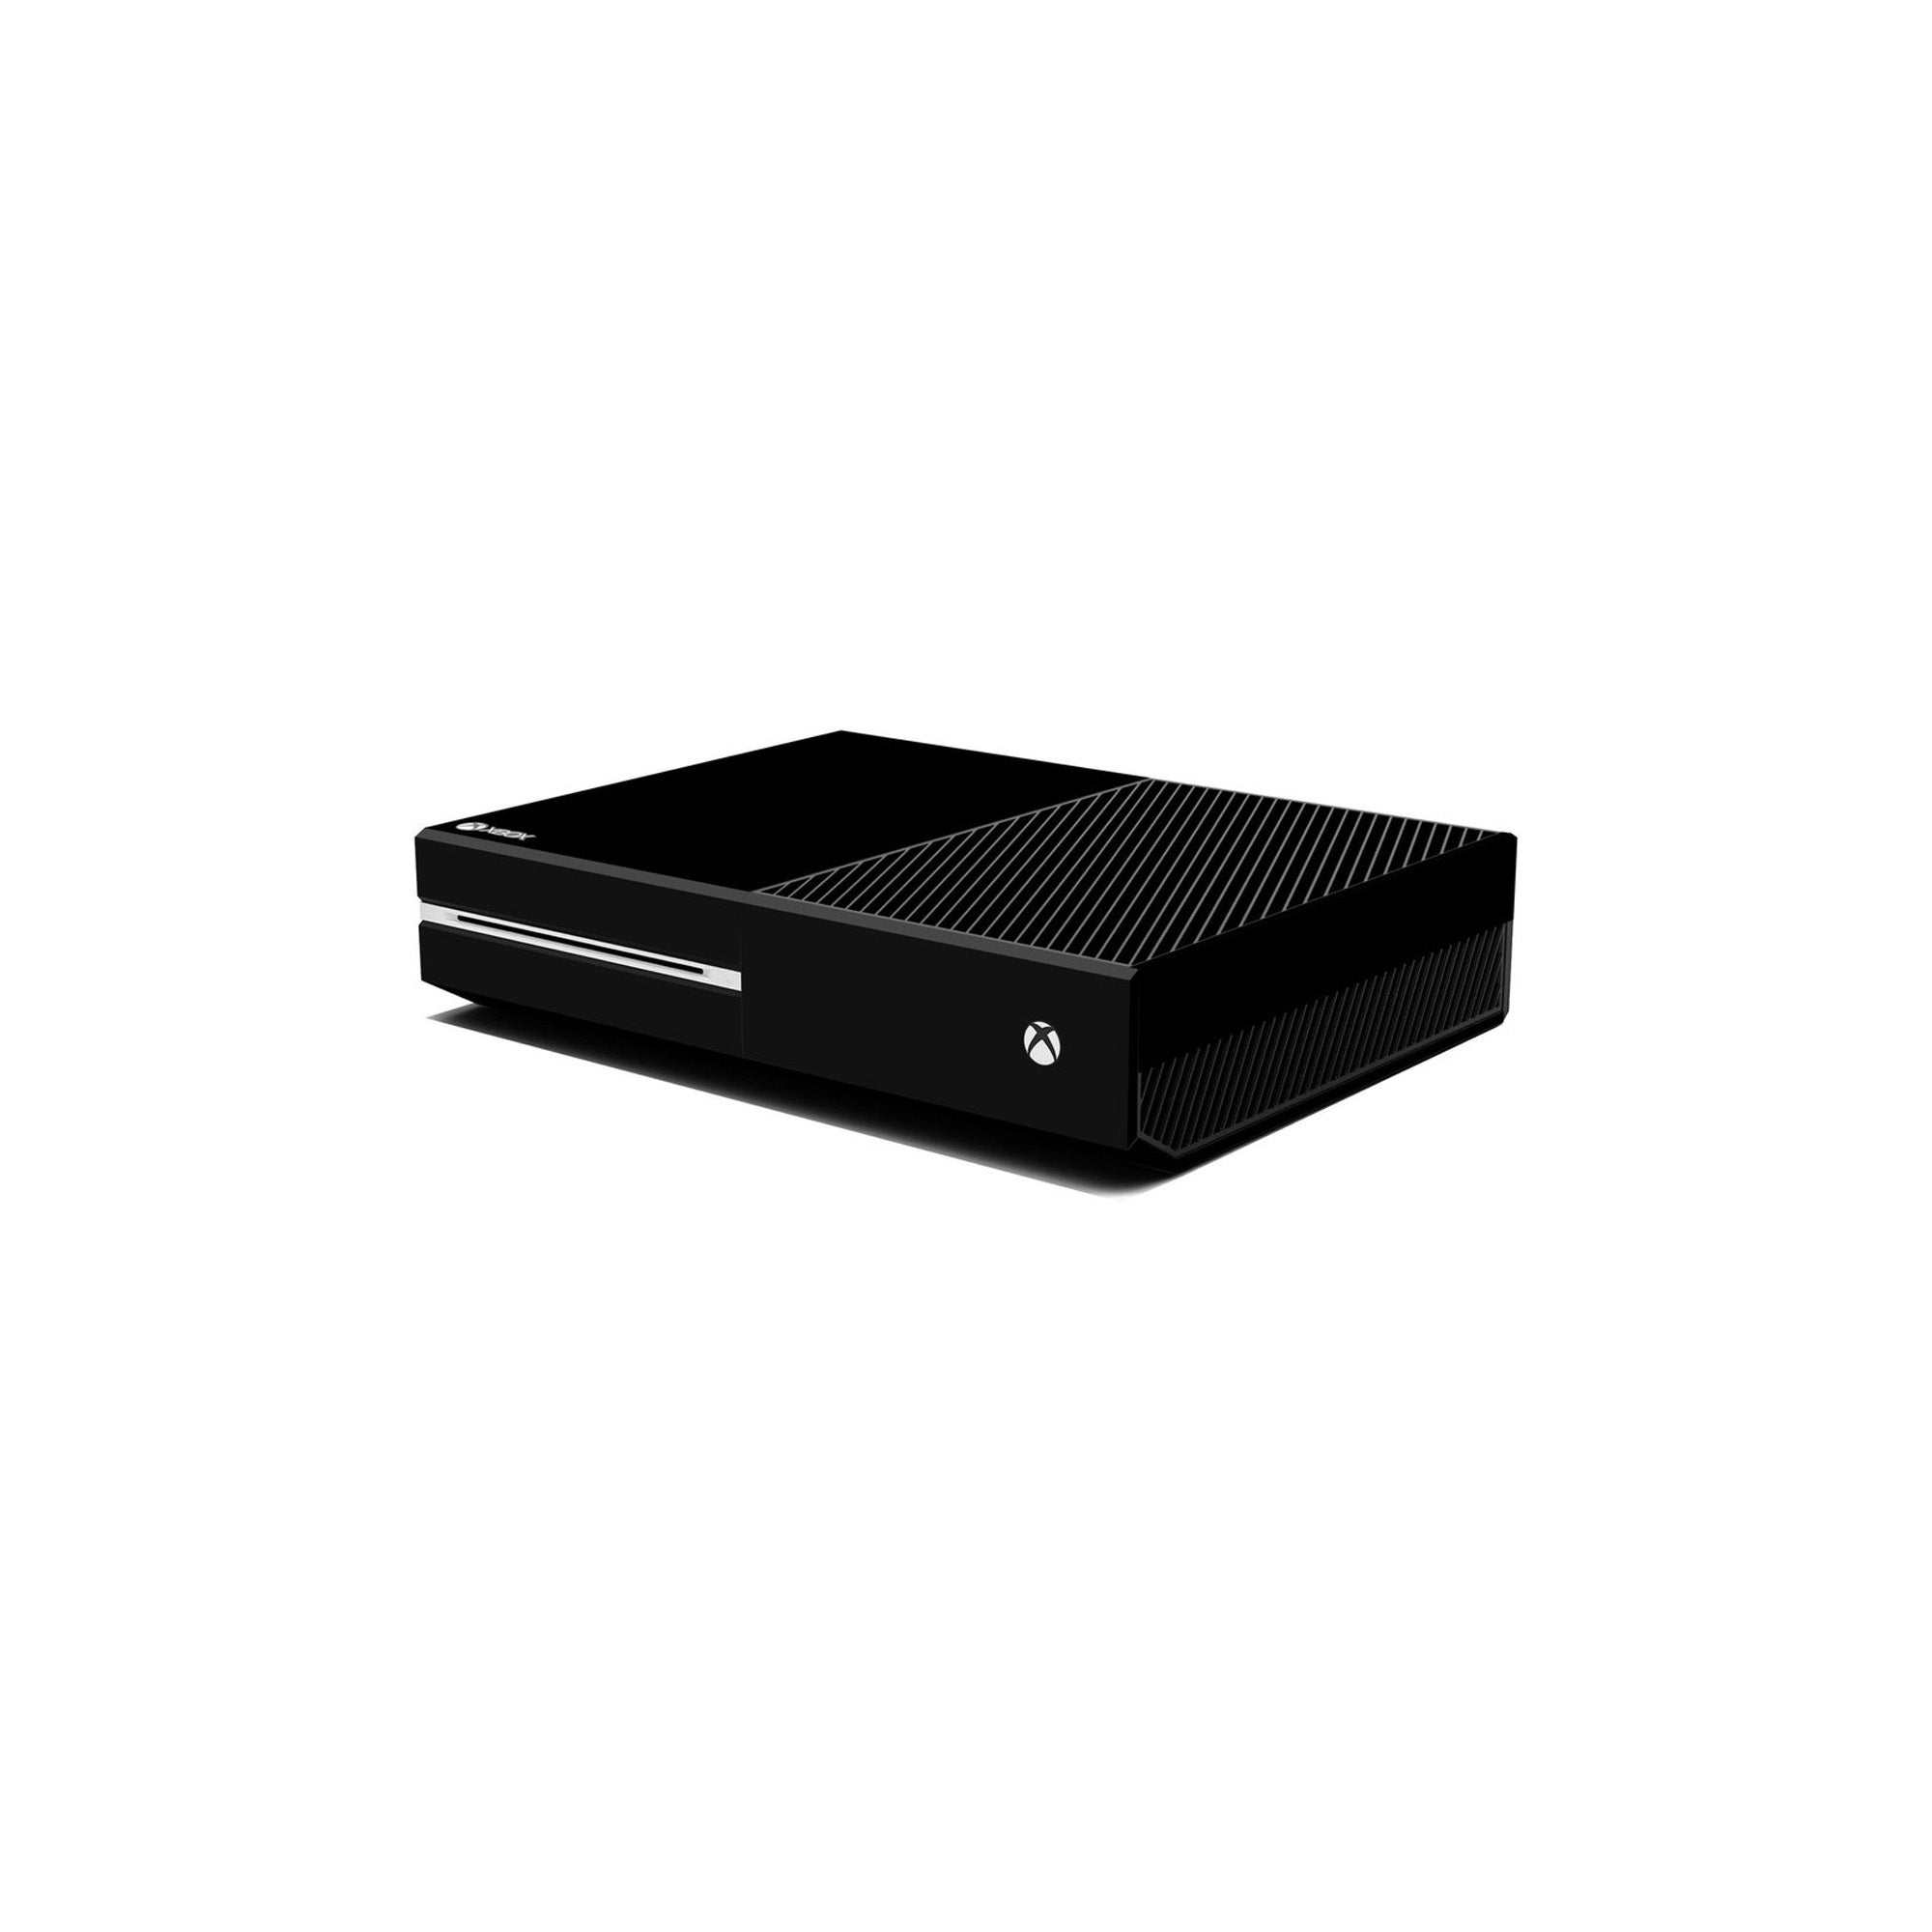 Microsoft Xbox One Original Console